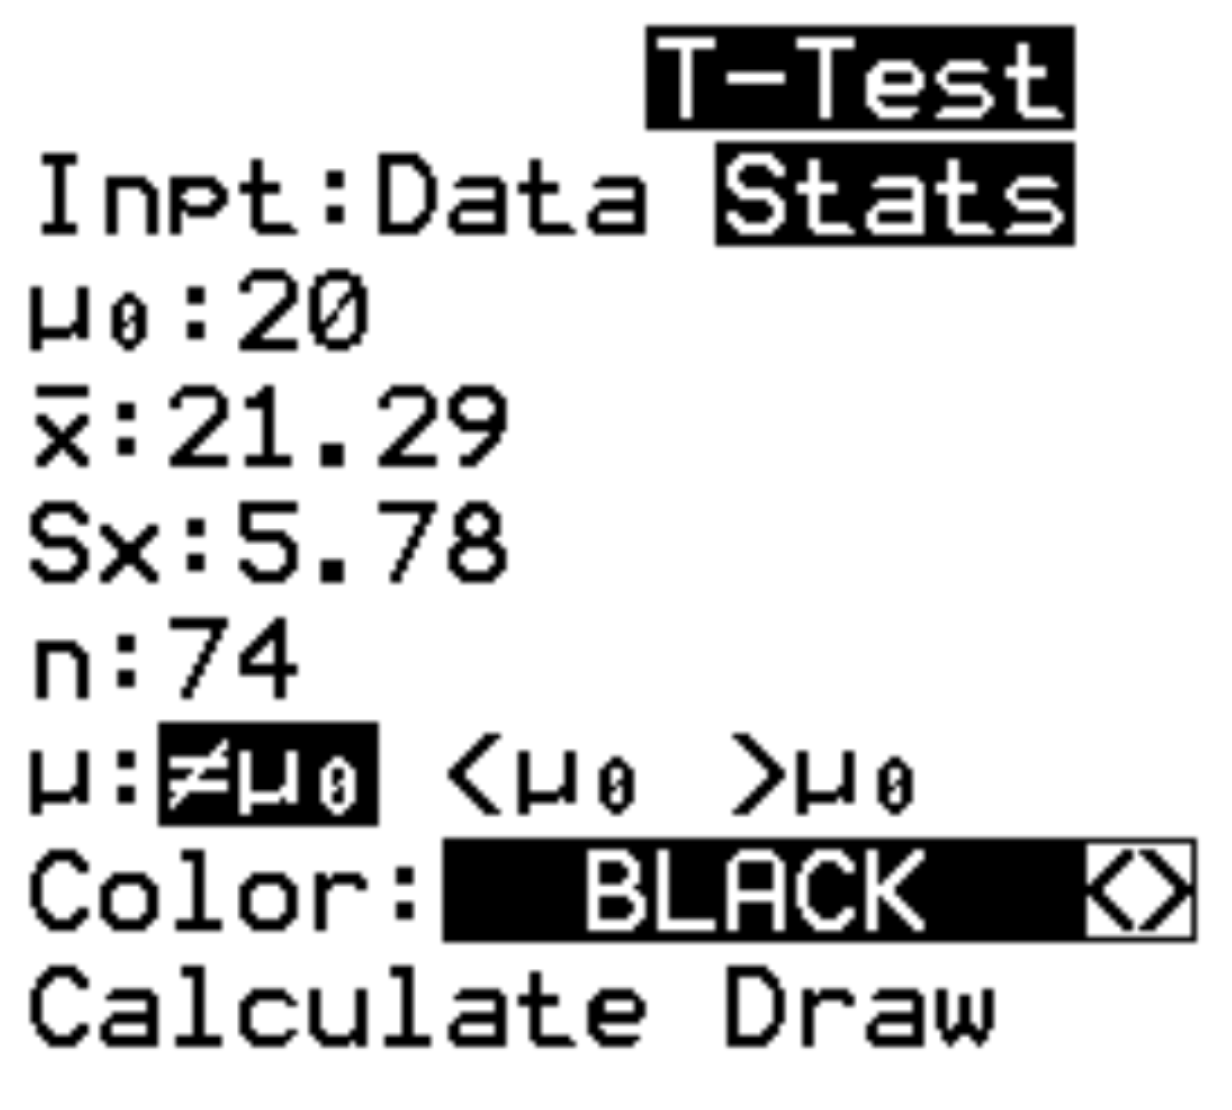 Um exemplo de teste t com estatísticas na TI-84